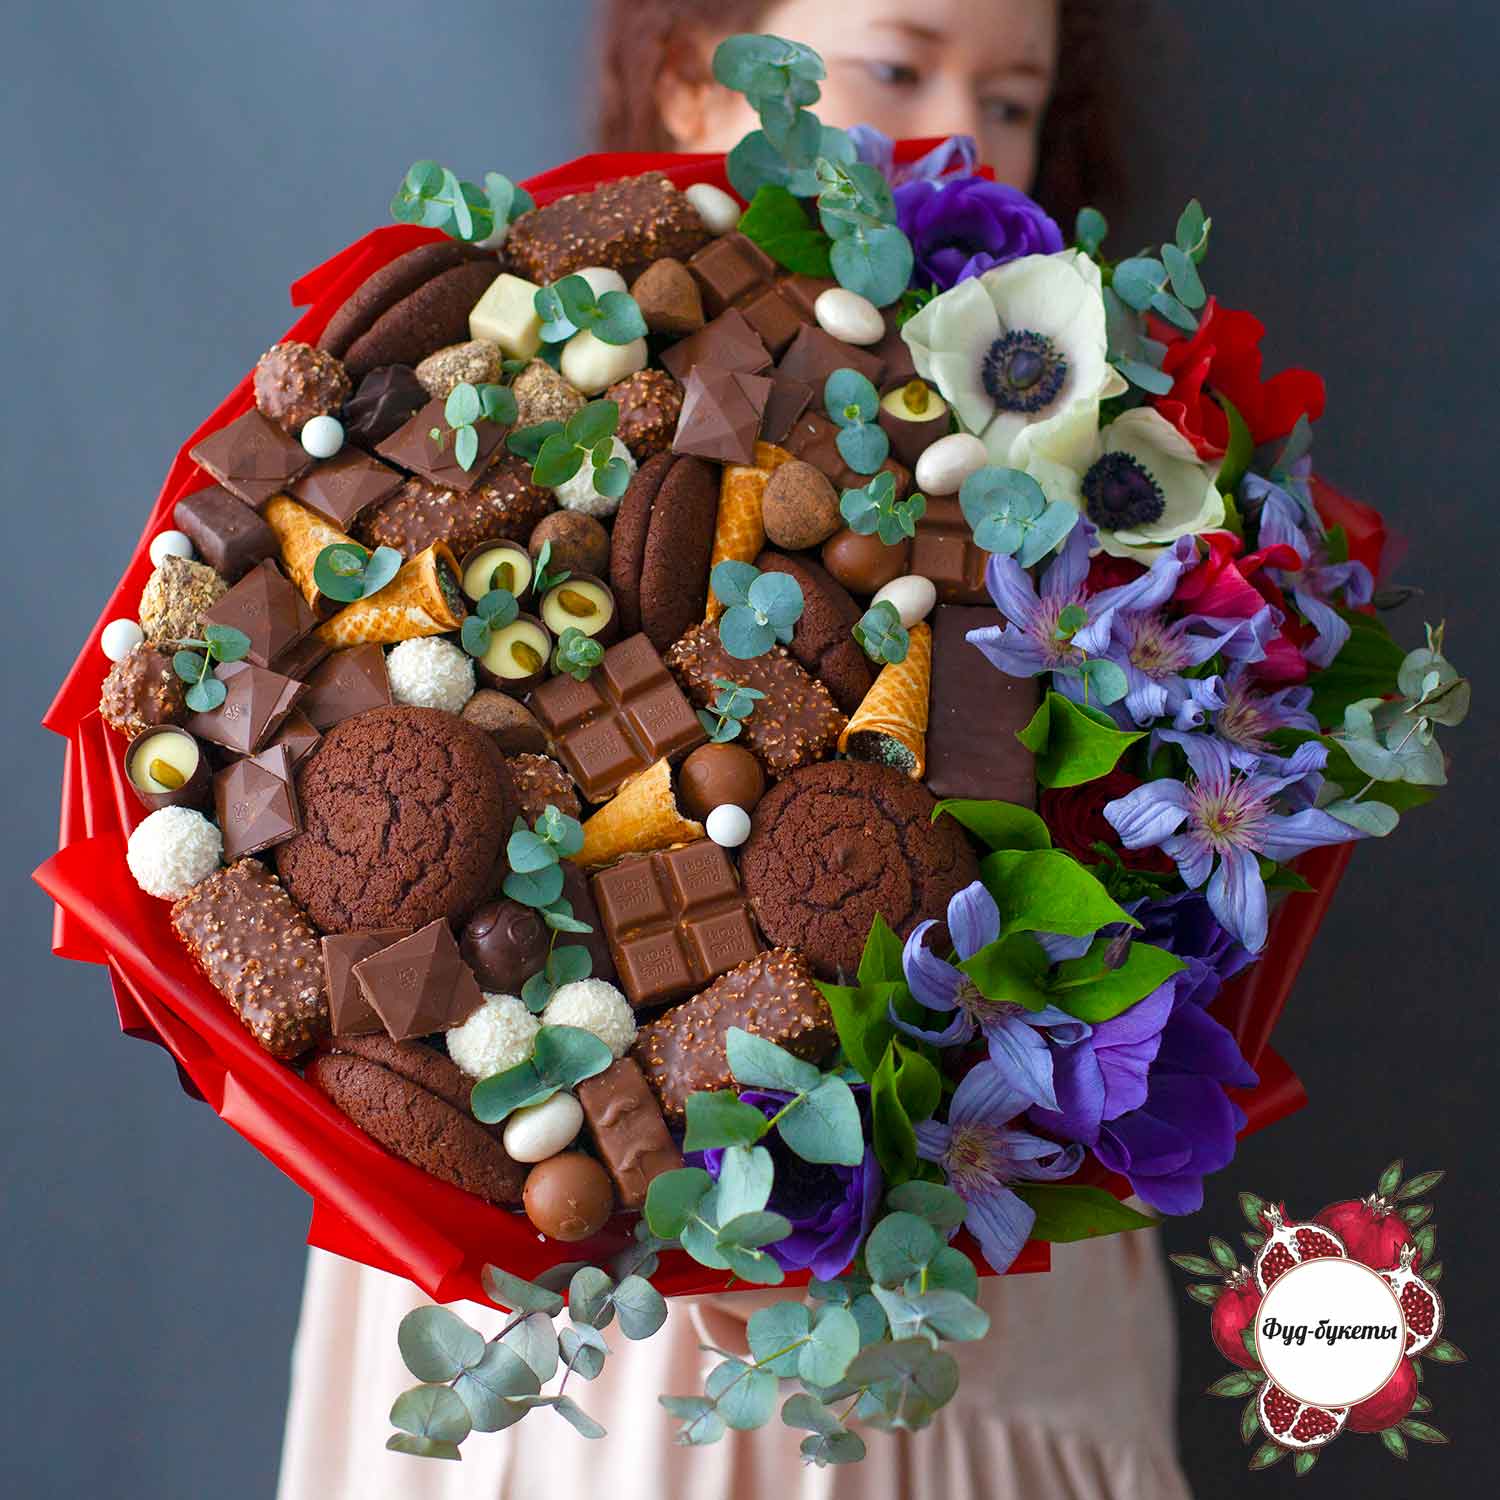 Большой букет из шоколада, печенья и цветов купить в Москве с доставкойнедорого